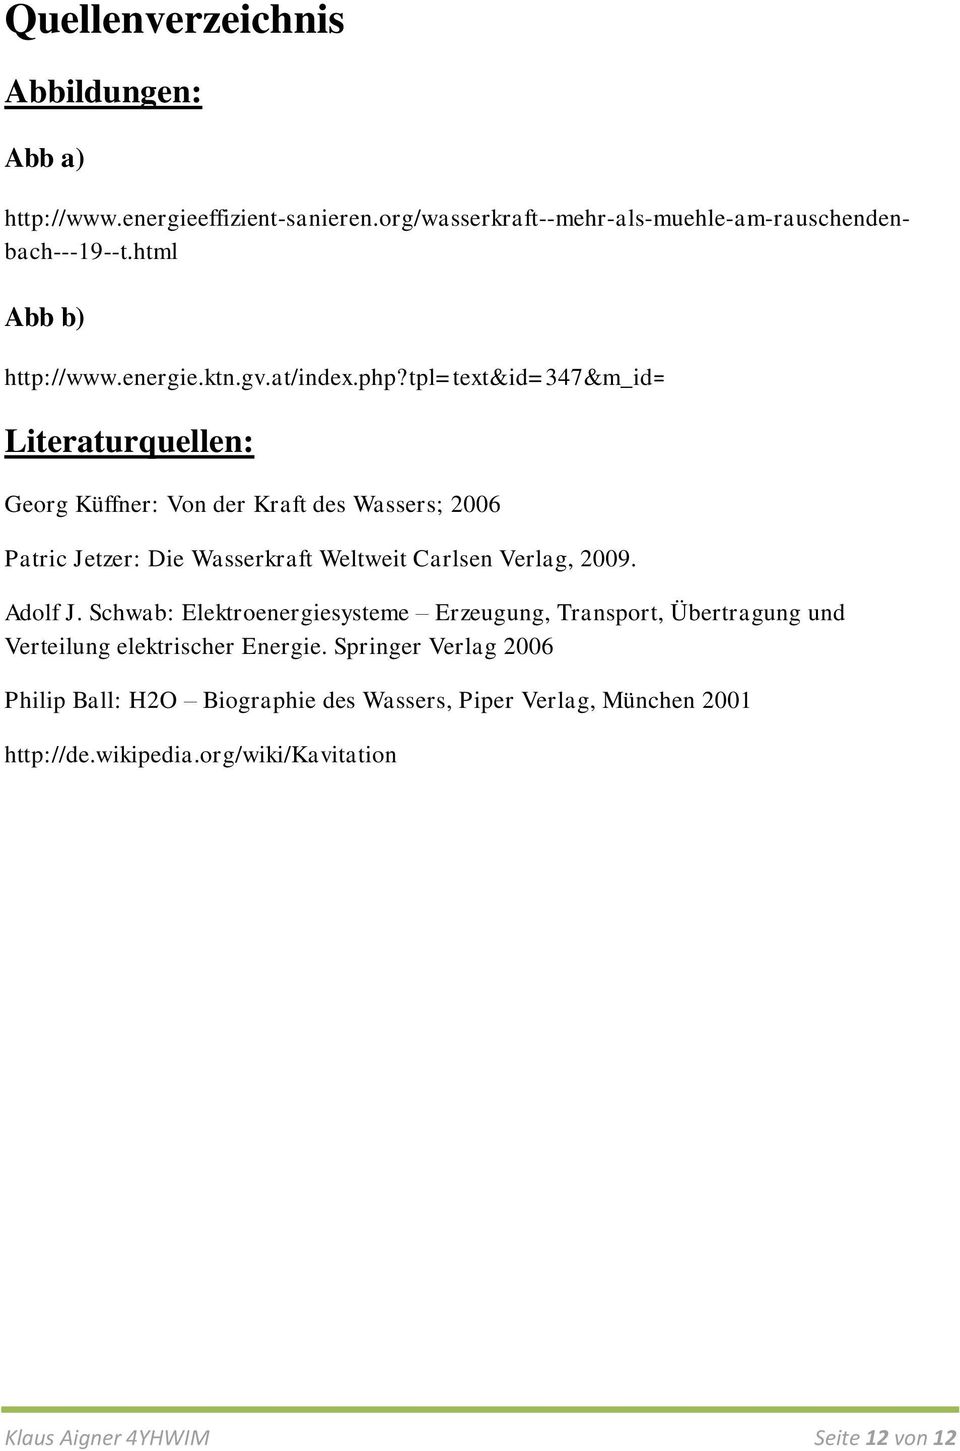 tpl=text&id=347&m_id= Literaturquellen: Georg Küffner: Von der Kraft des Wassers; 2006 Patric Jetzer: Die Wasserkraft Weltweit Carlsen Verlag, 2009.